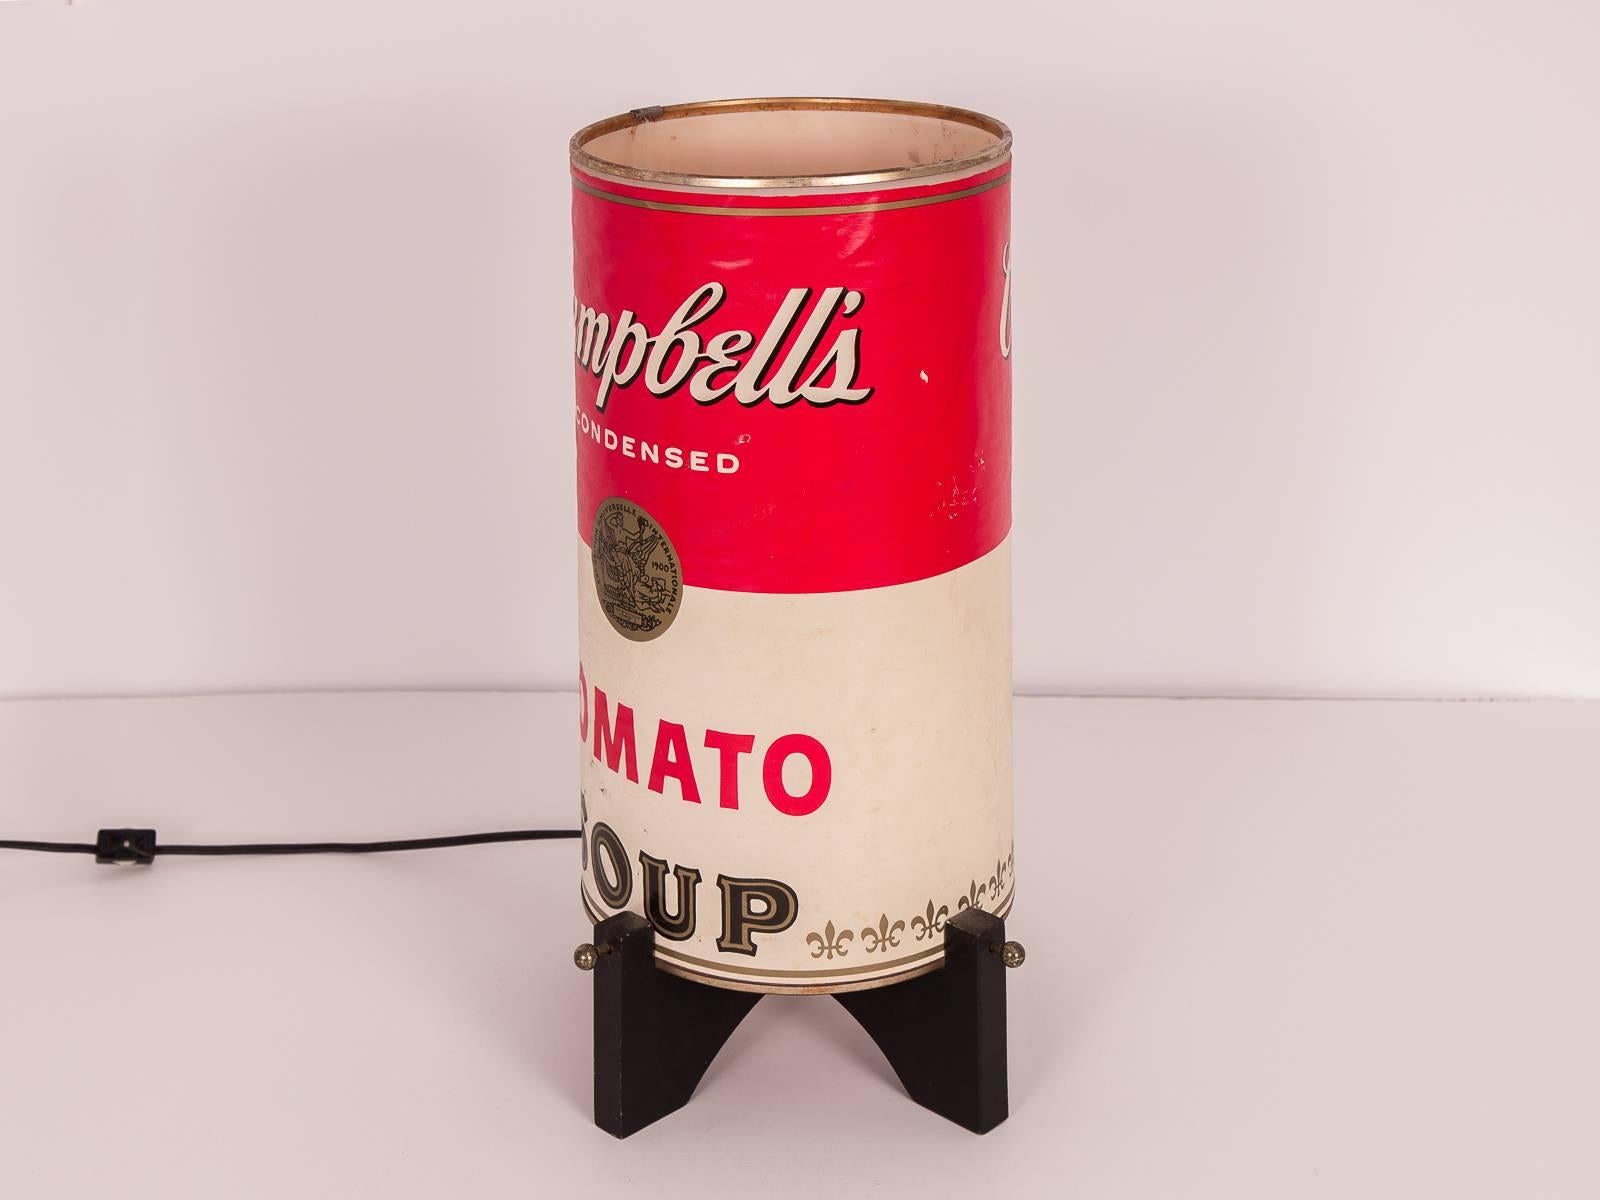 1970er Vintage Campbell's Suppe Can Tischlampe. Der Lampenschirm aus Papier trägt auf jeder Seite das Campbell's Label für Hühnernudelsuppe und Tomatensuppe. Ein hübsches Pop-Art-Erbstück. Die Lampe ist in gutem Zustand, mit altersgemäßen